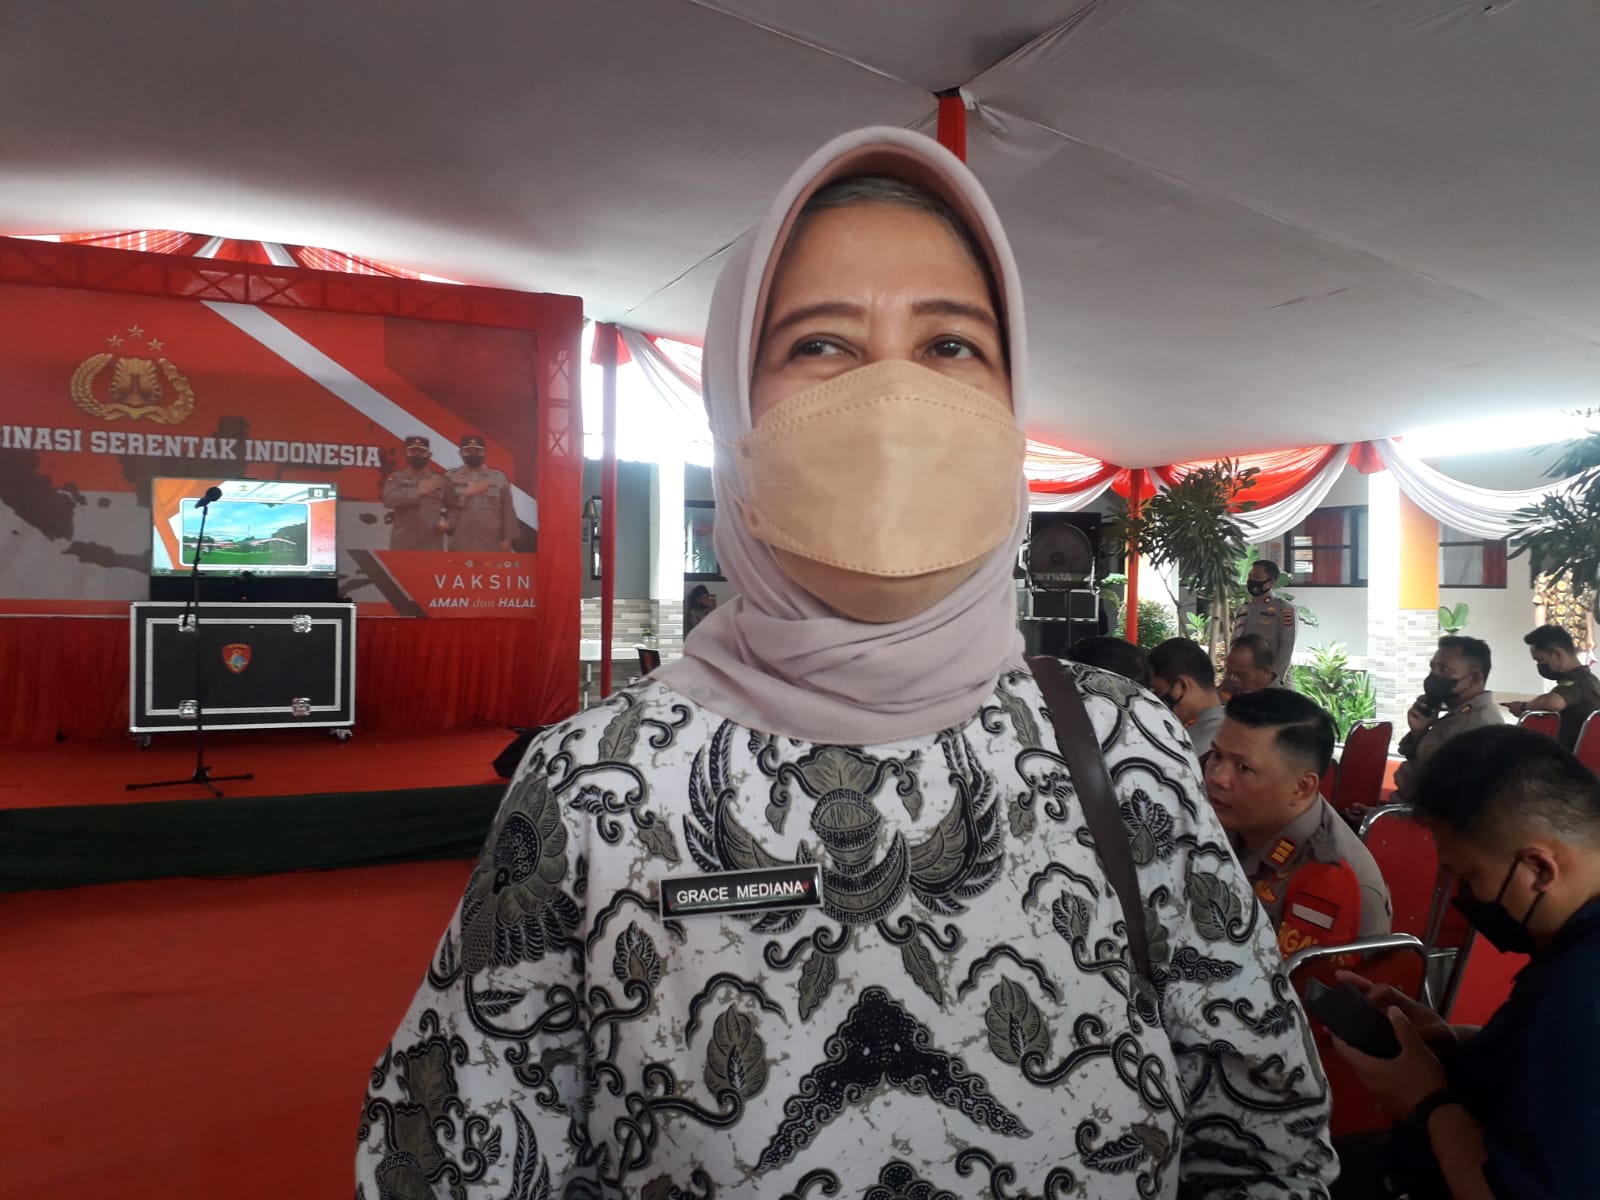 Kepala Dinas Kesehatan (Dinkes) Kabupaten Bandung, Grace Mediana Purnami.